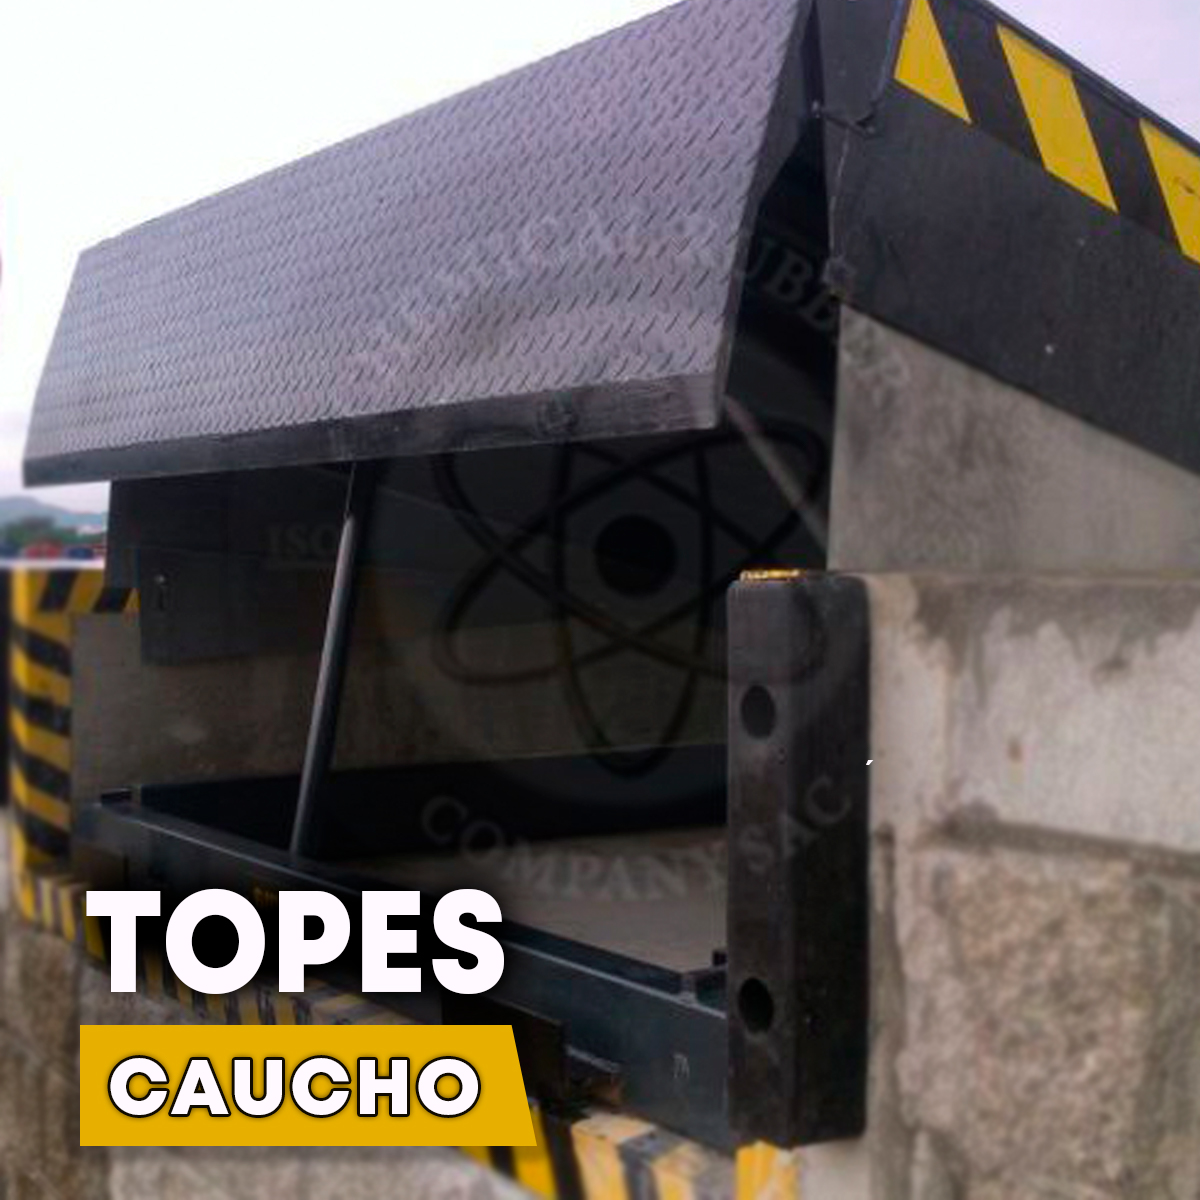 Topes Caucho